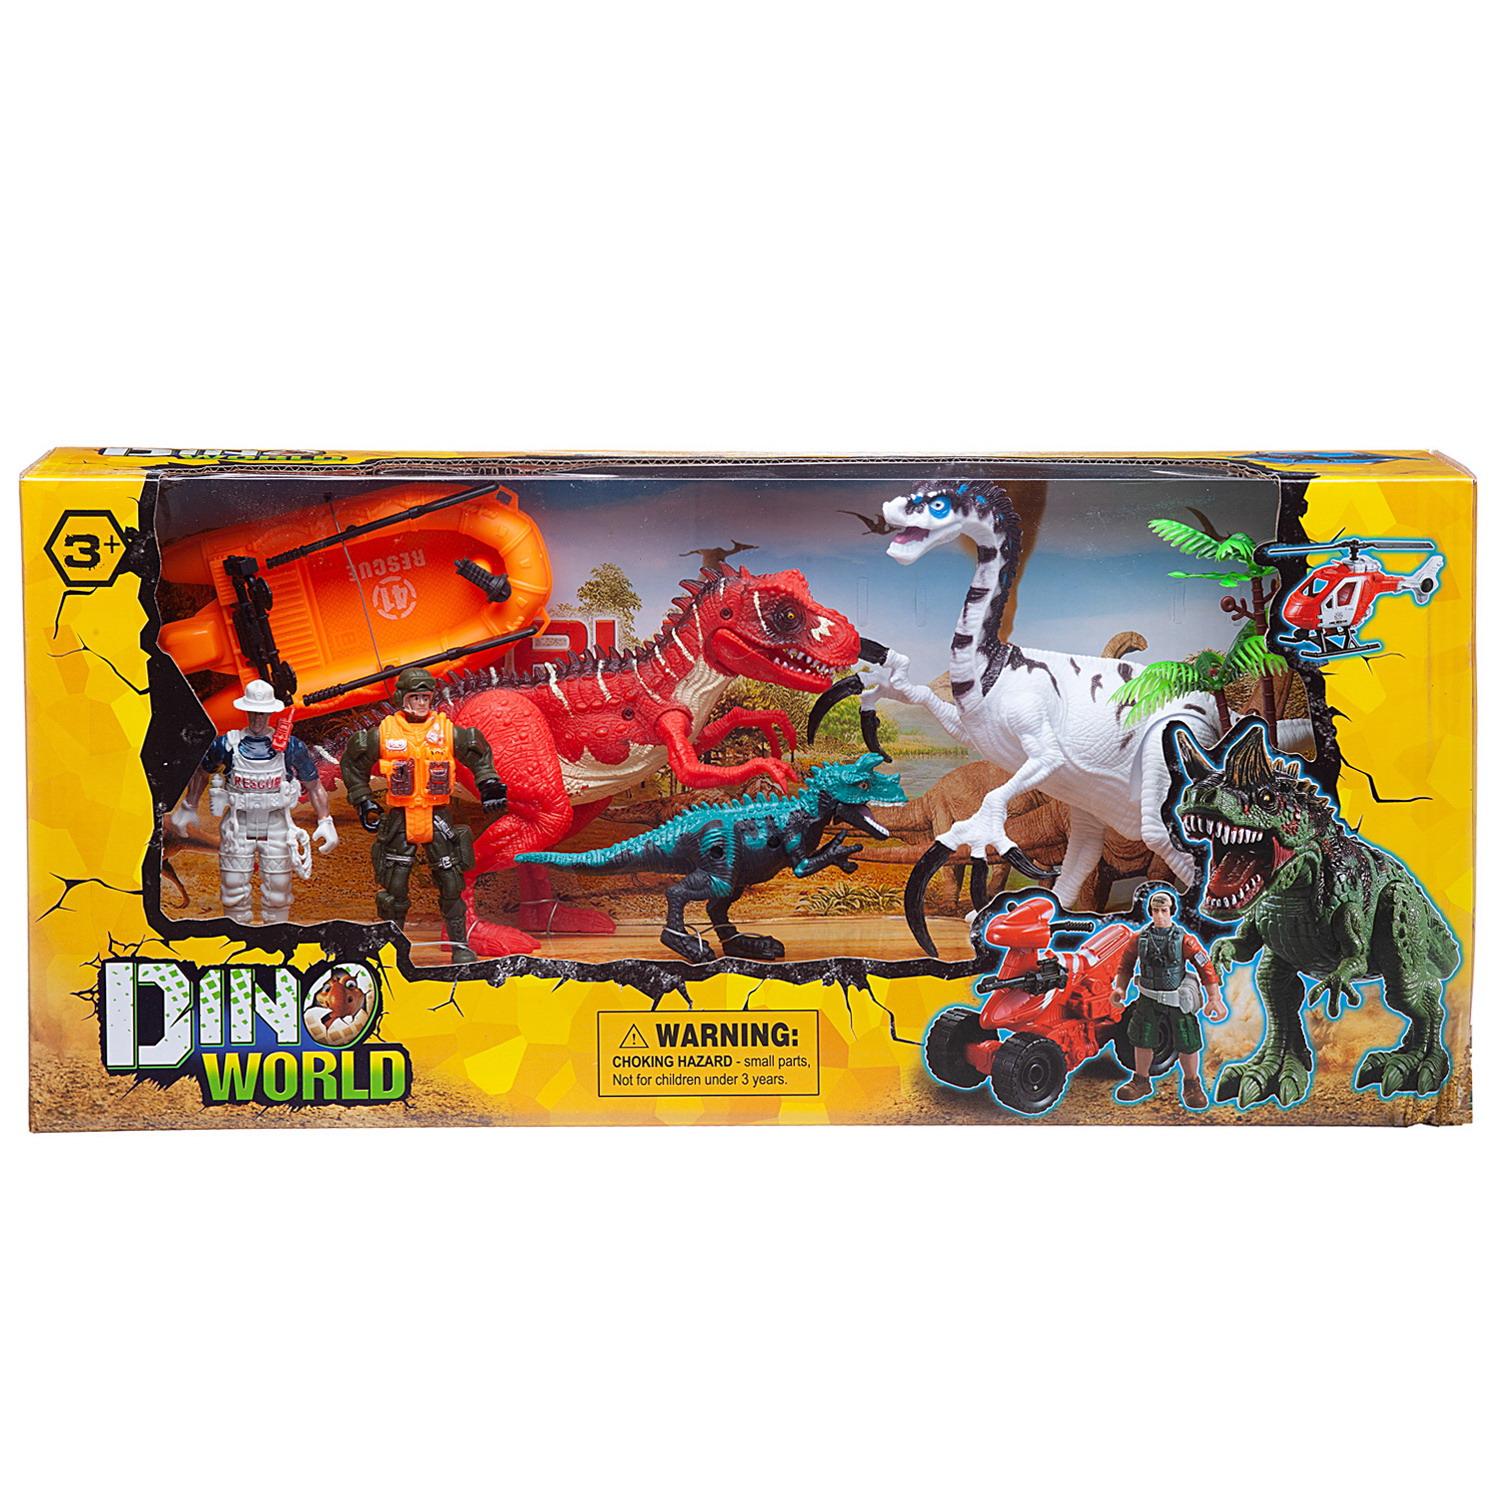 Купить WA-14216, Игровой набор Junfa Мир динозавров 3 динозавра, 2 фигурки человека, лодка, акссесуары, Junfa toys,